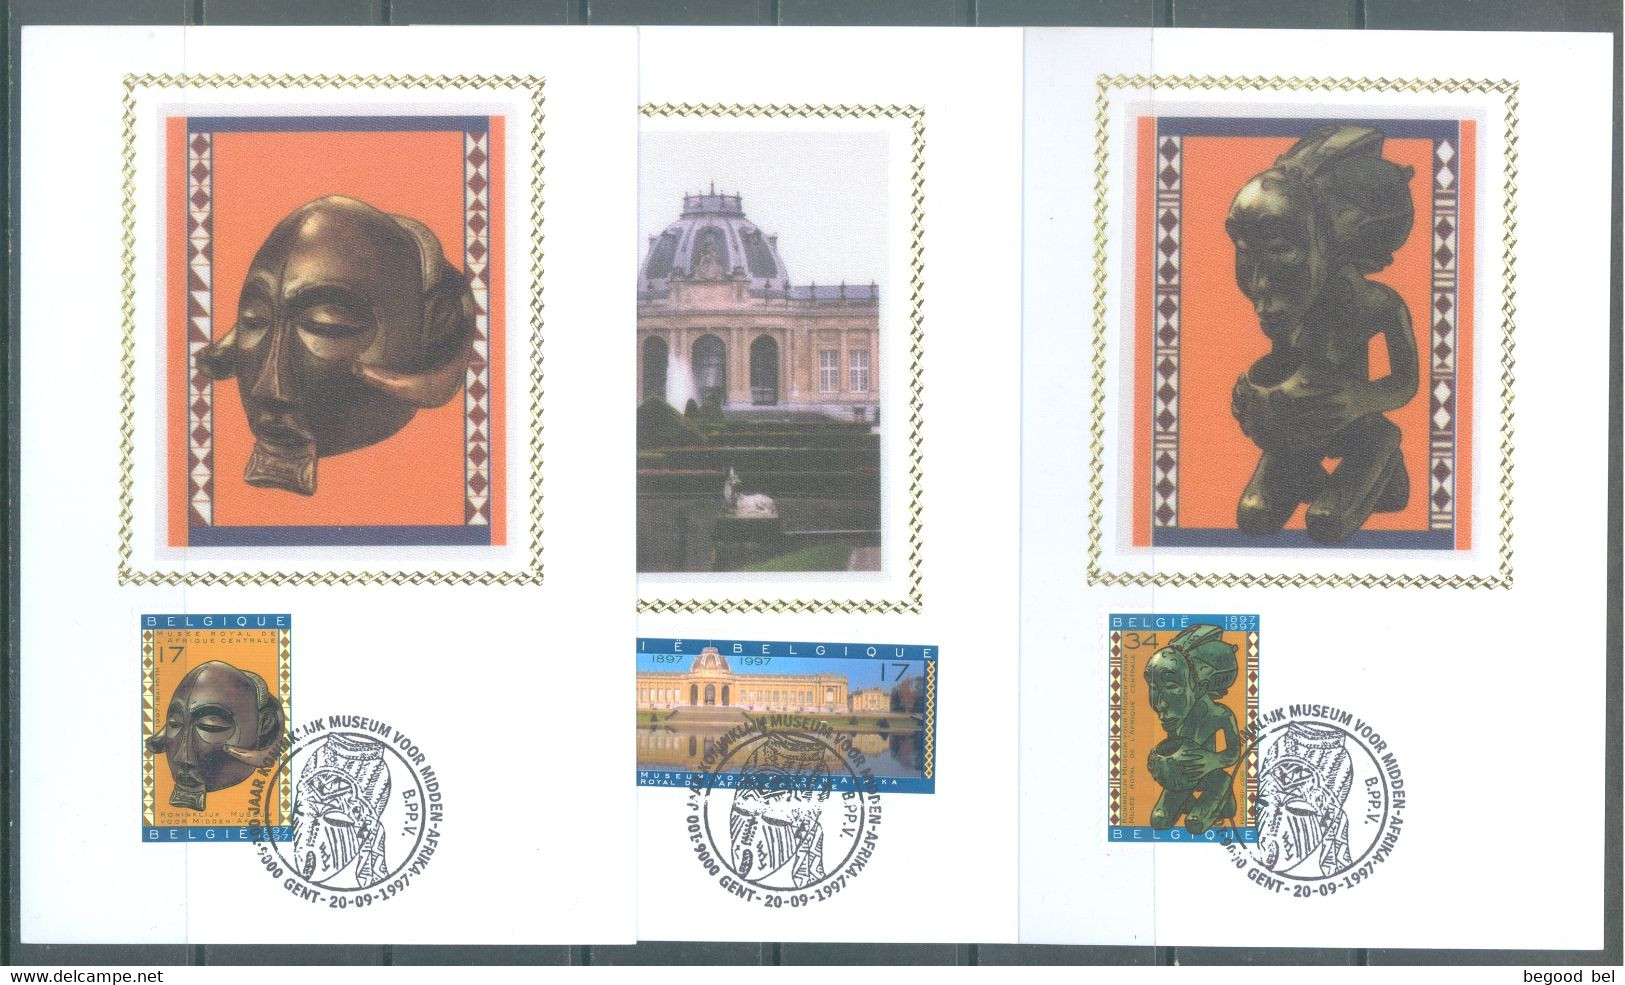 BELGIUM - CM/MK. SOIE ZIJDE - 20.9.1997 - MIDDLE AFRICA MUSEUM SON STAMP - COB 2727-2729 - Lot 24998 - 1991-2000